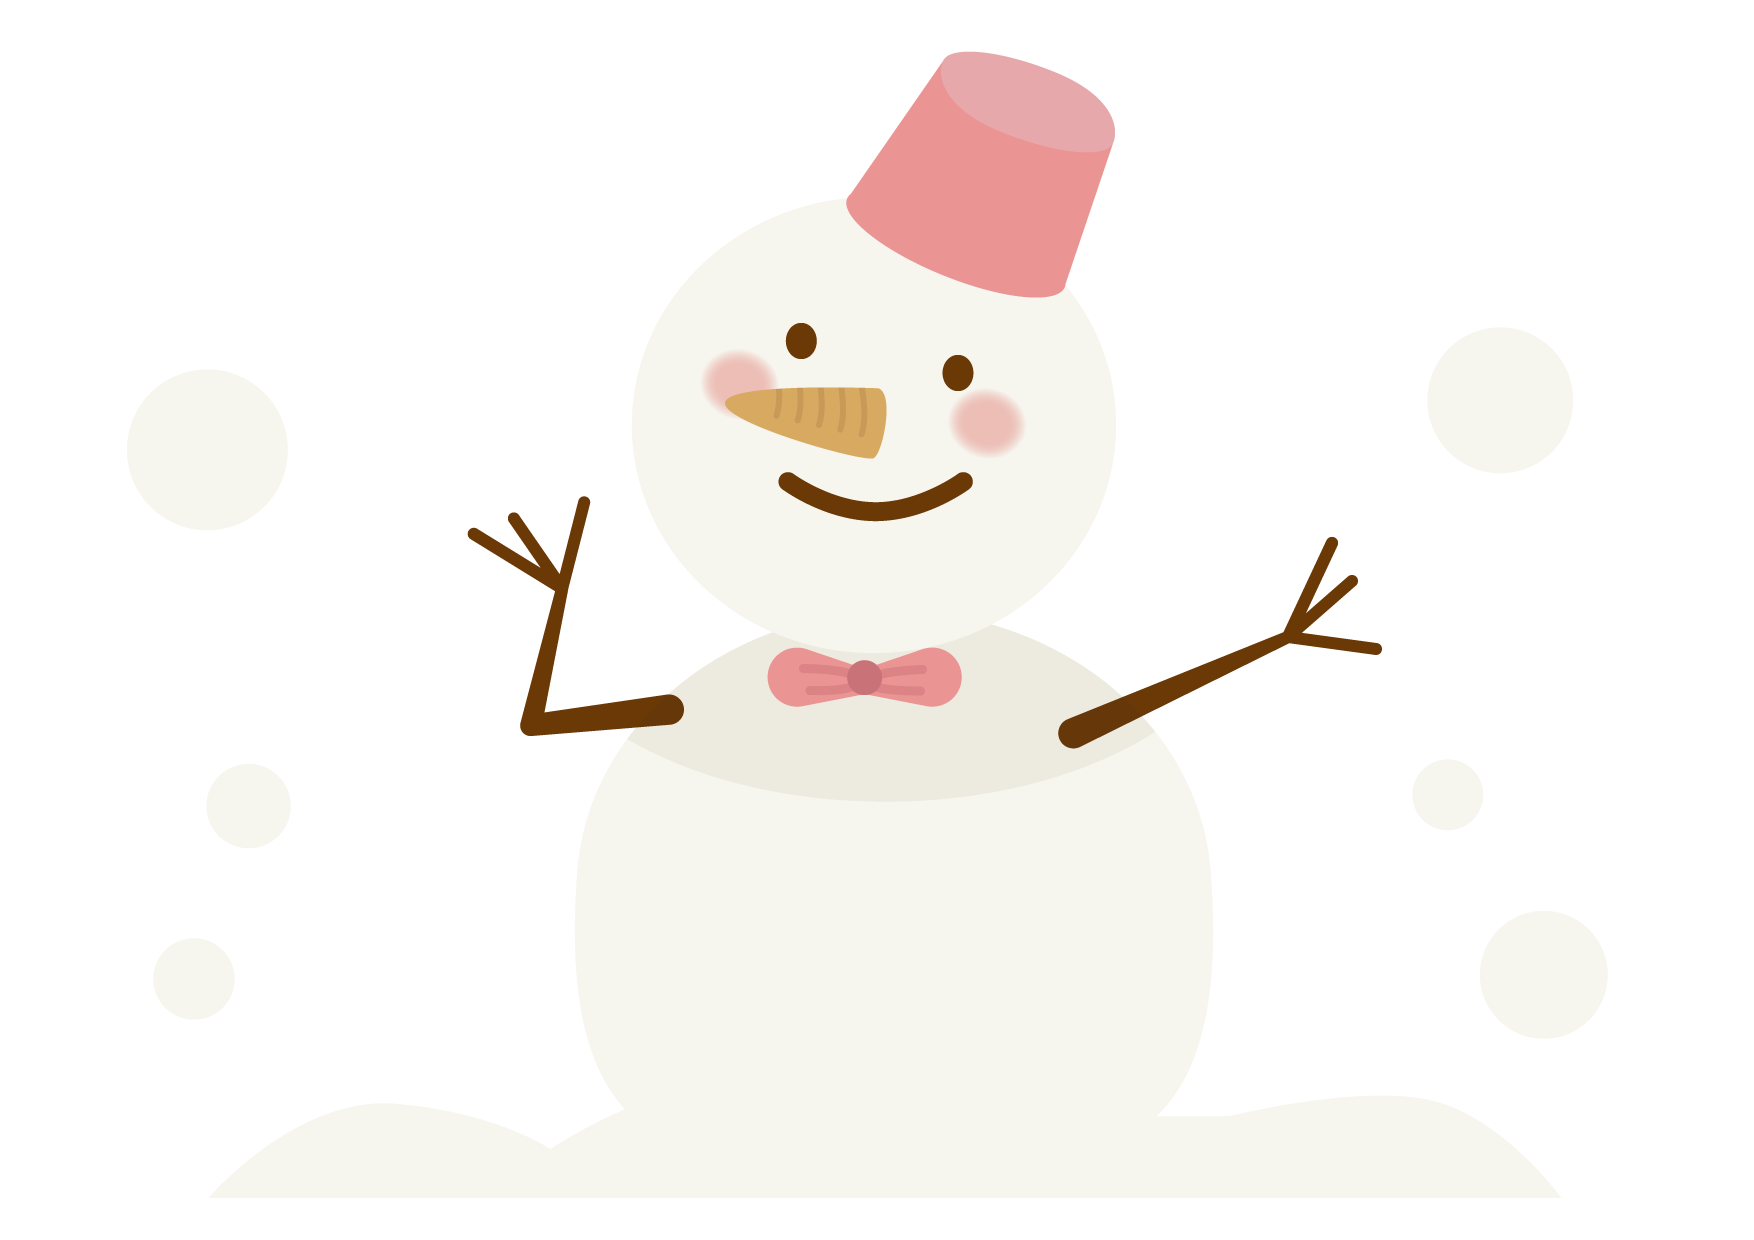 可愛いイラスト無料 雪だるま Free Illustration Snowman 公式 イラストダウンロード